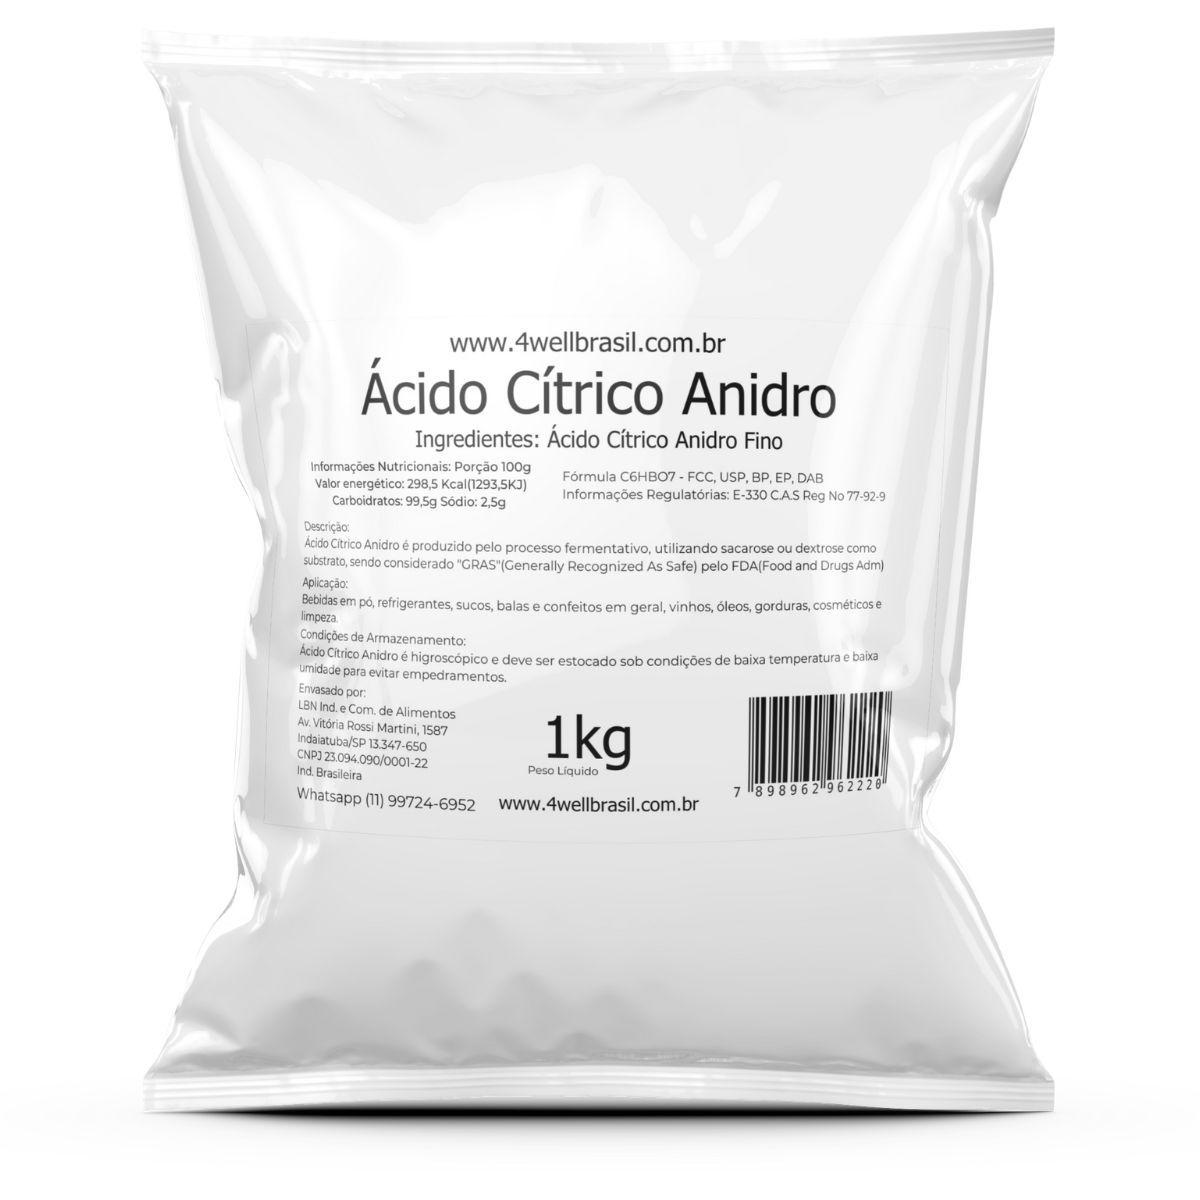 Acido citrico anidro E330 da 1 kg